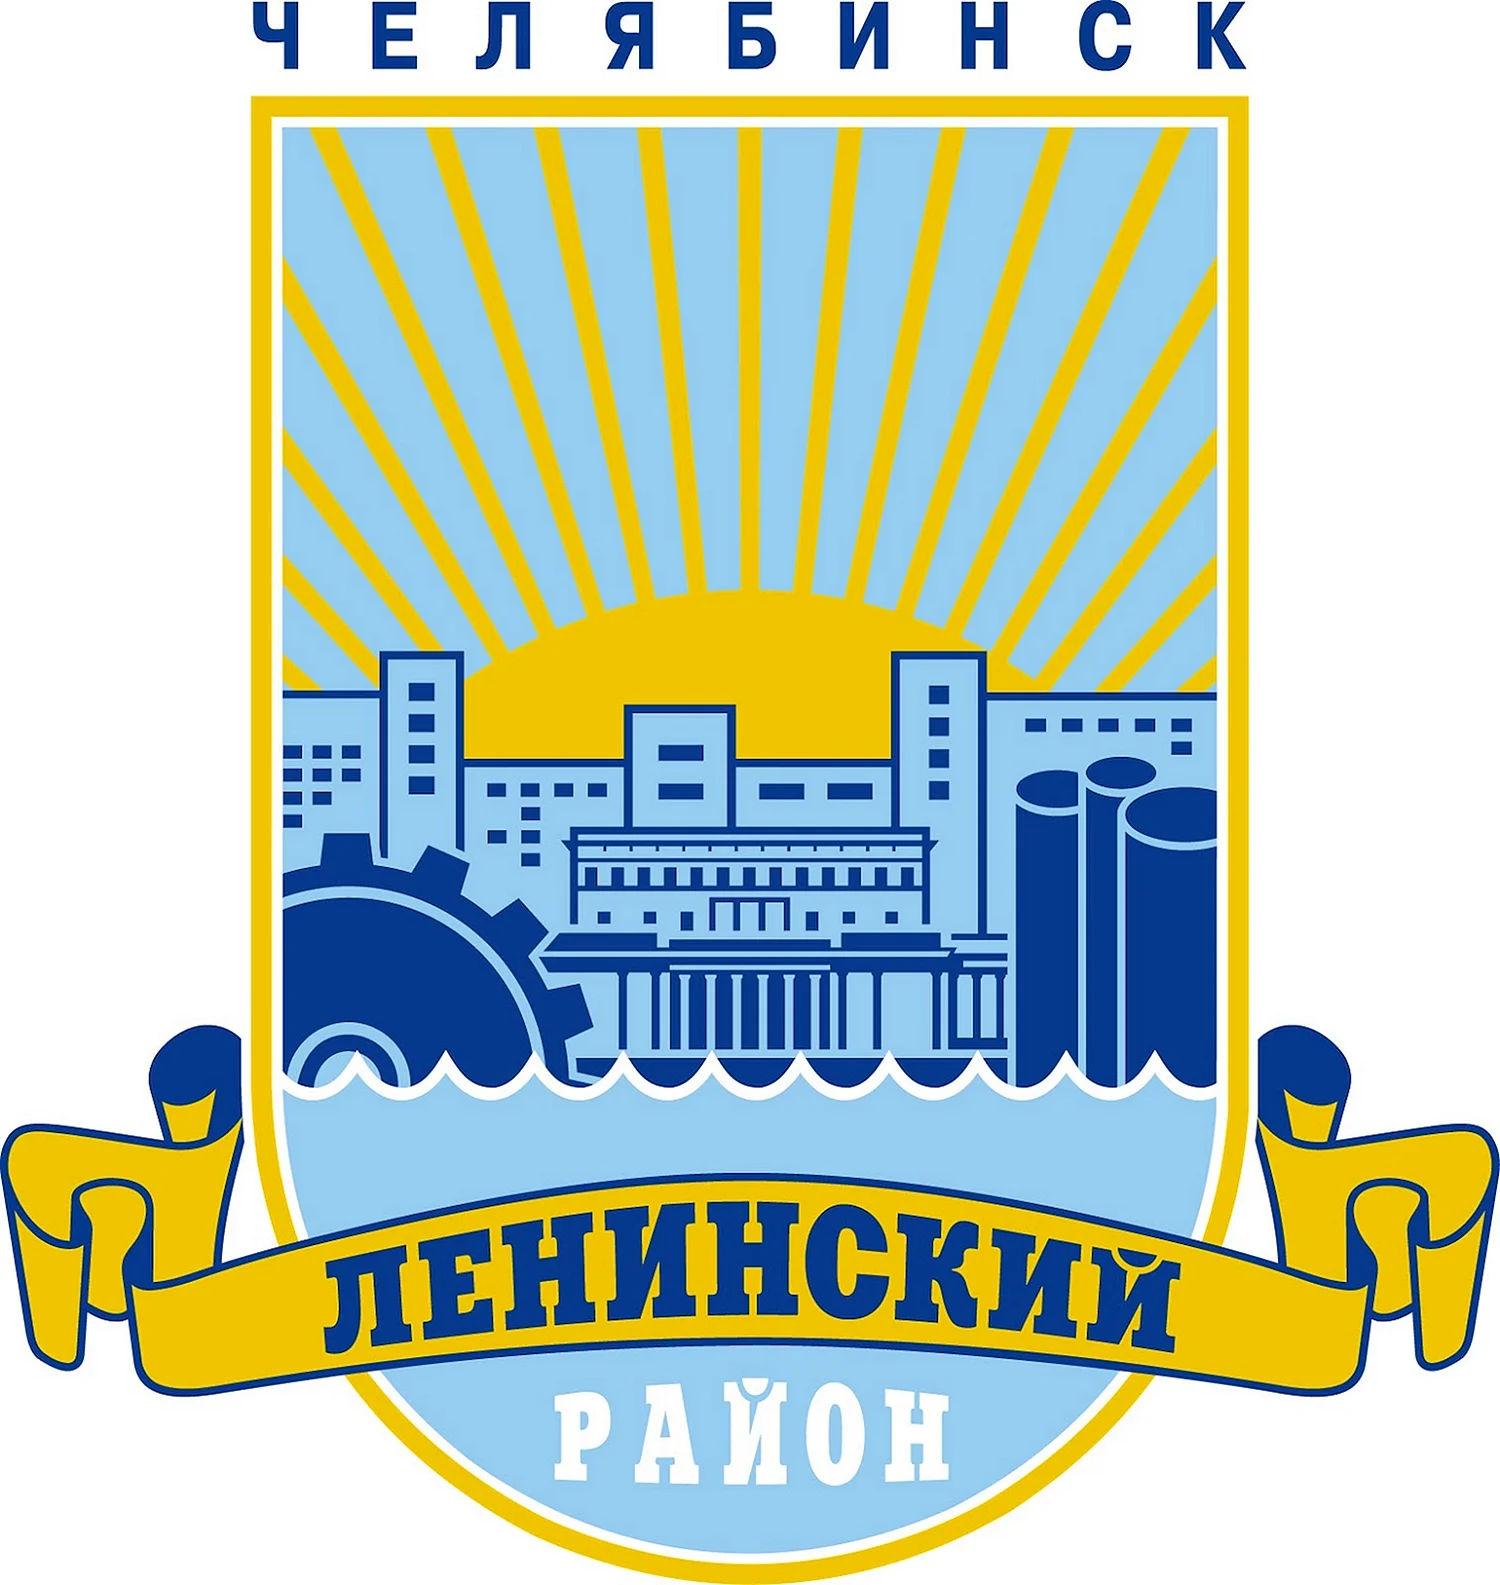 Герб Ленинского района города Челябинска